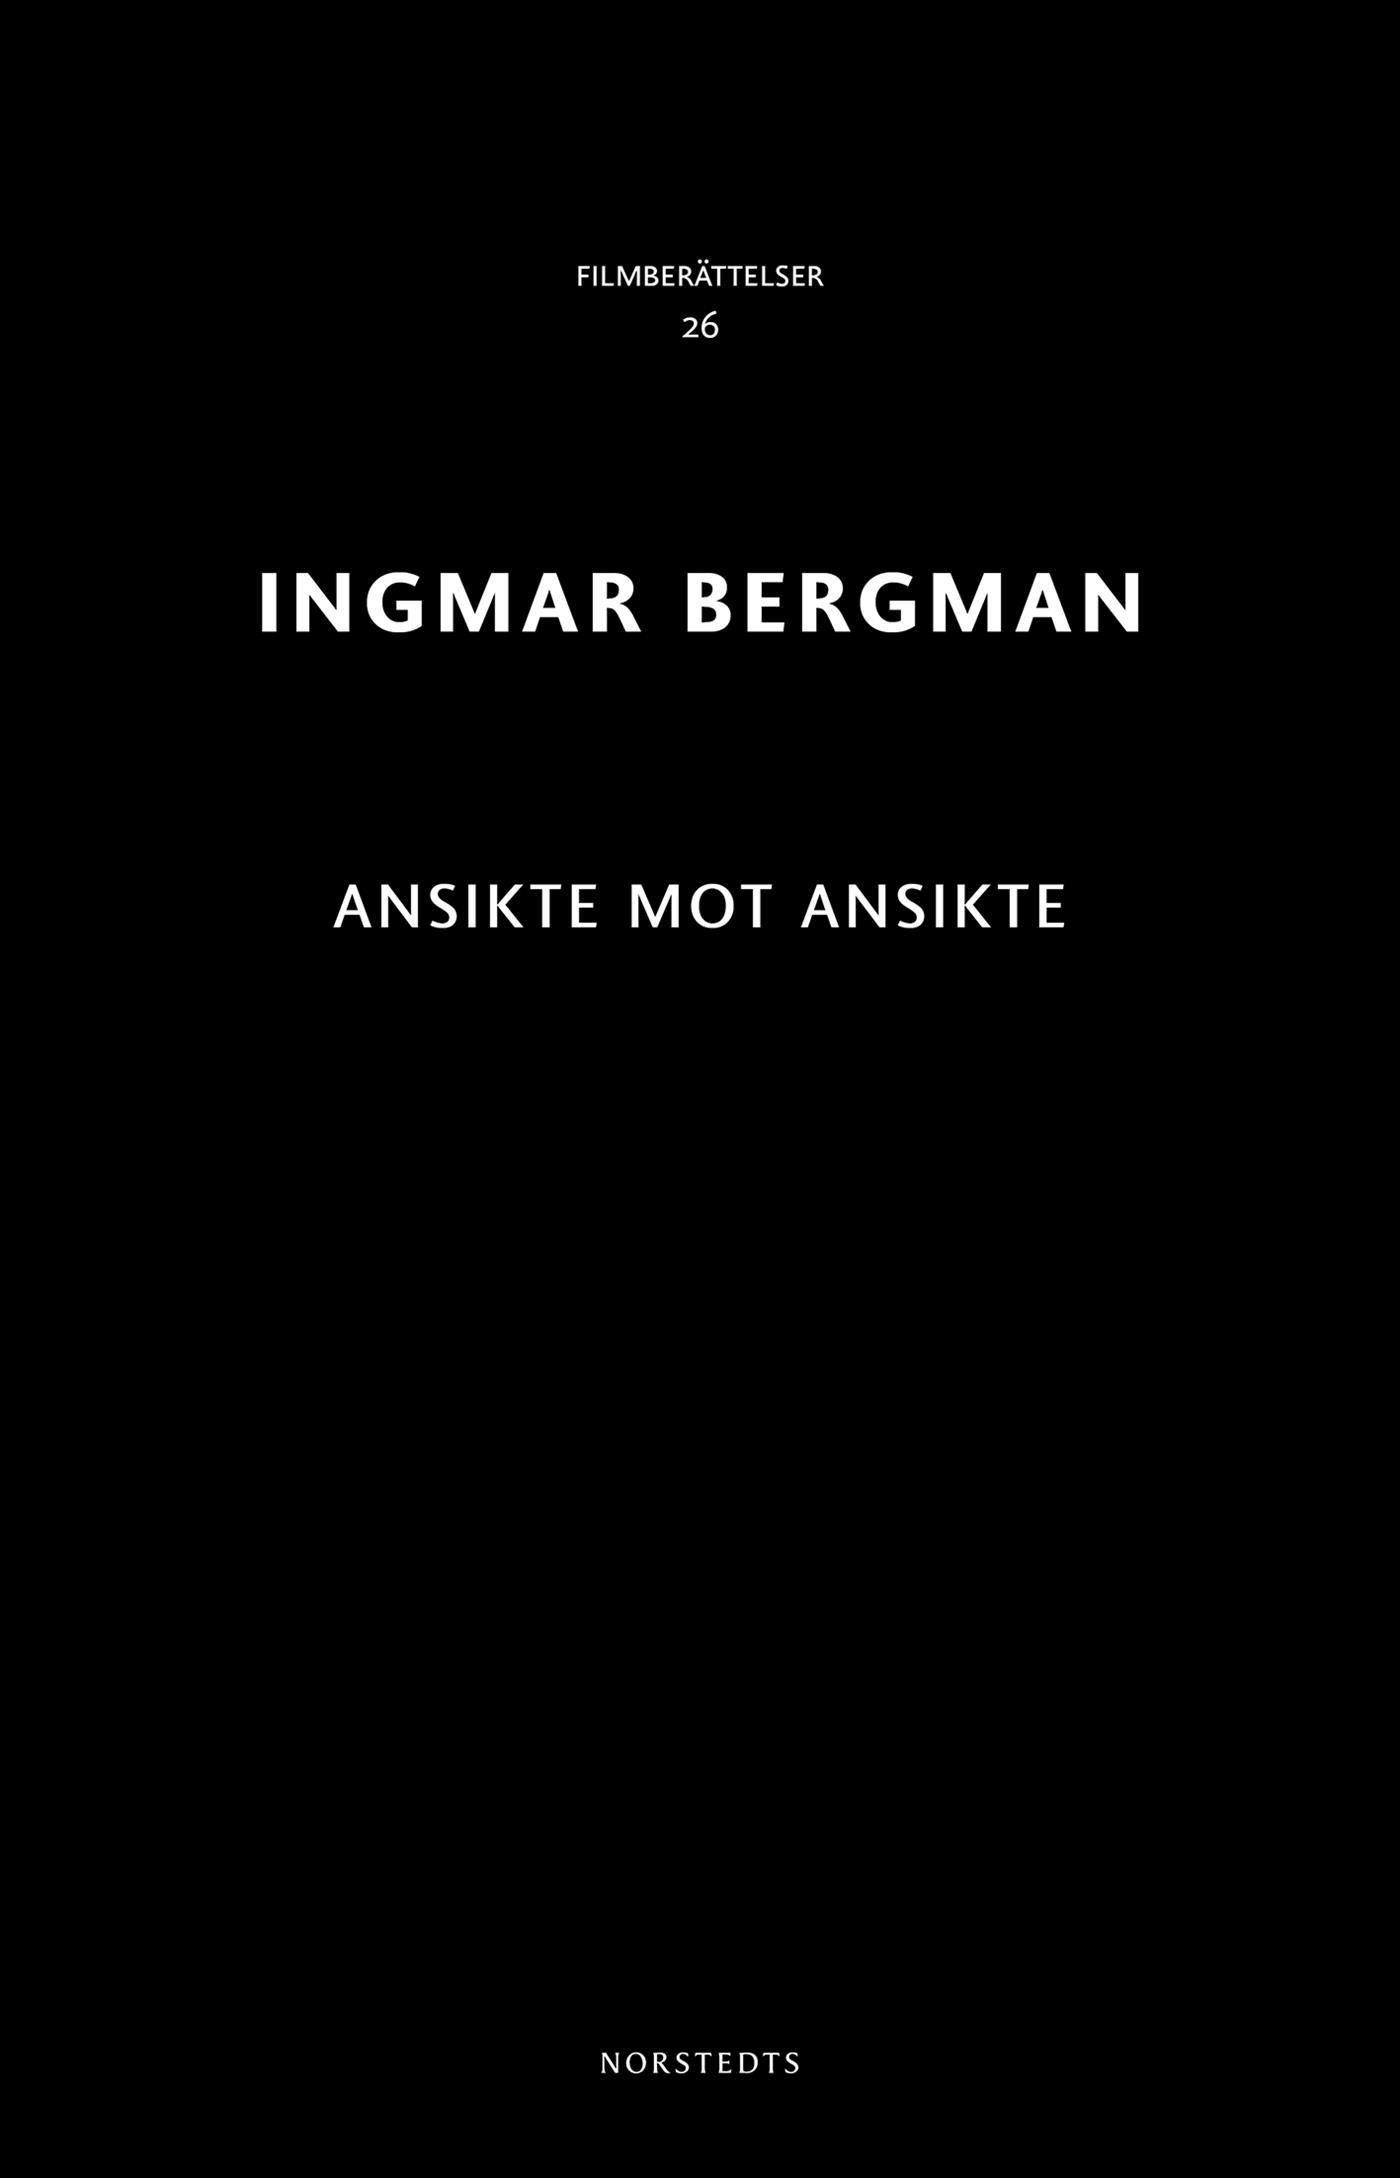 Ansikte mot ansikte - Ingmar Bergman